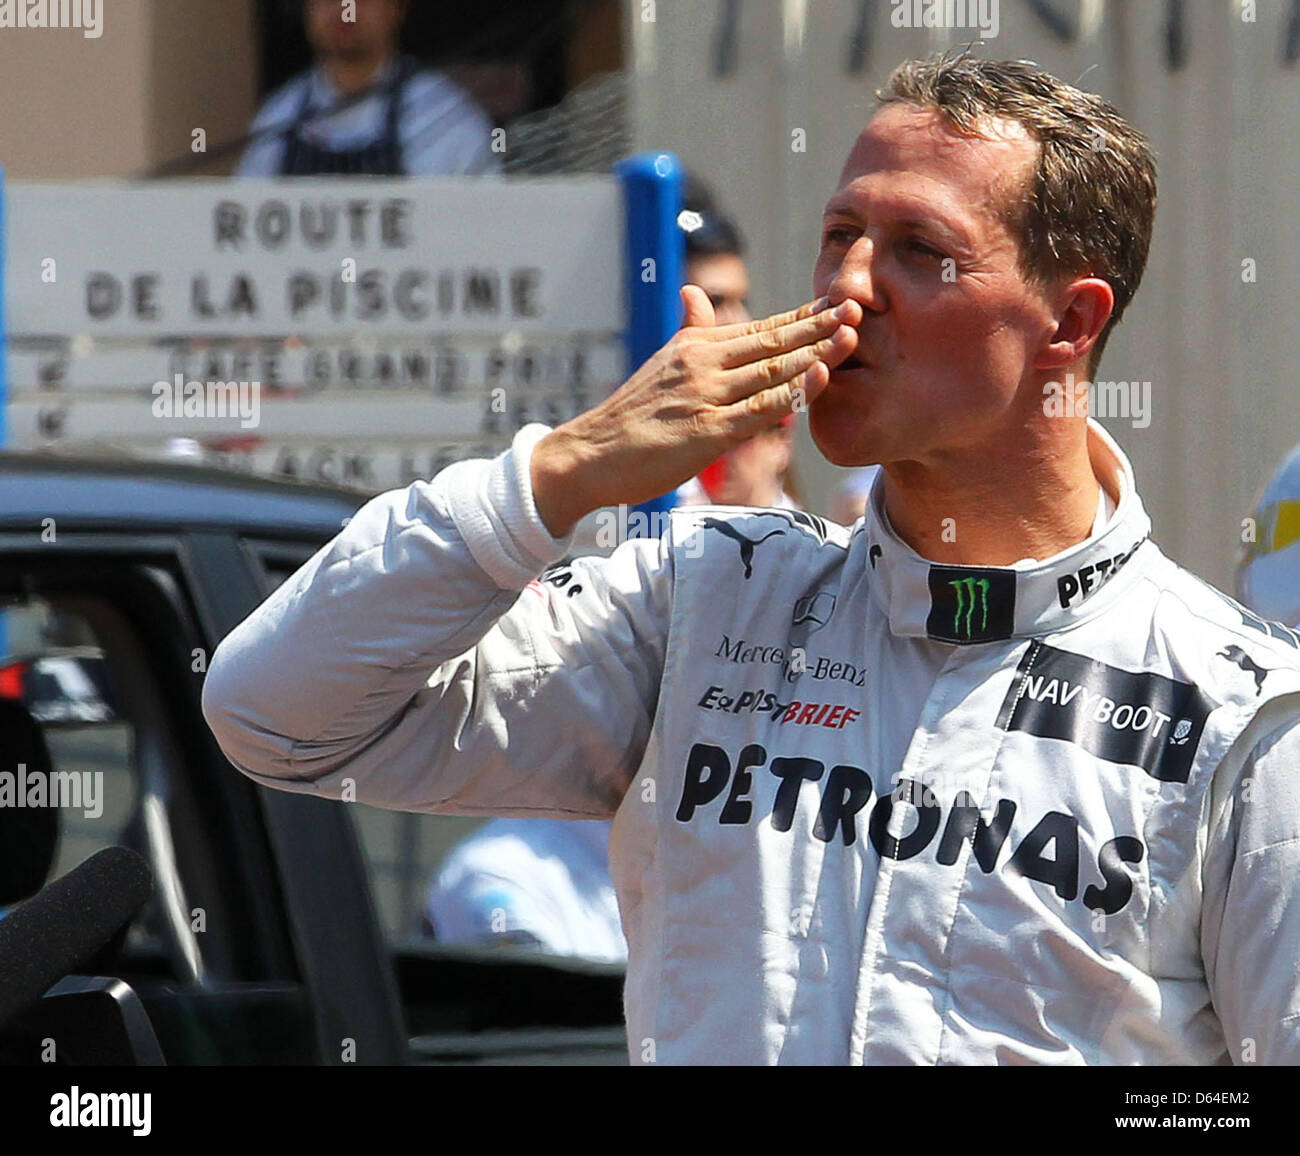 Il tedesco pilota di Formula Uno Michael Schumacher della Mercedes AMG reagisce dopo aver scandito il miglior tempo nella sessione di qualifica in gara di F1 Via di Monte Carlo, Monaco, 26 maggio 2012. Il Grand Prix avrà luogo il 27 maggio. Foto: Jens Buettner dpa (ACHTUNG: Wiederholung mit verändertem Bildausschnitt) +++(c) dpa - Bildfunk+++ Foto Stock